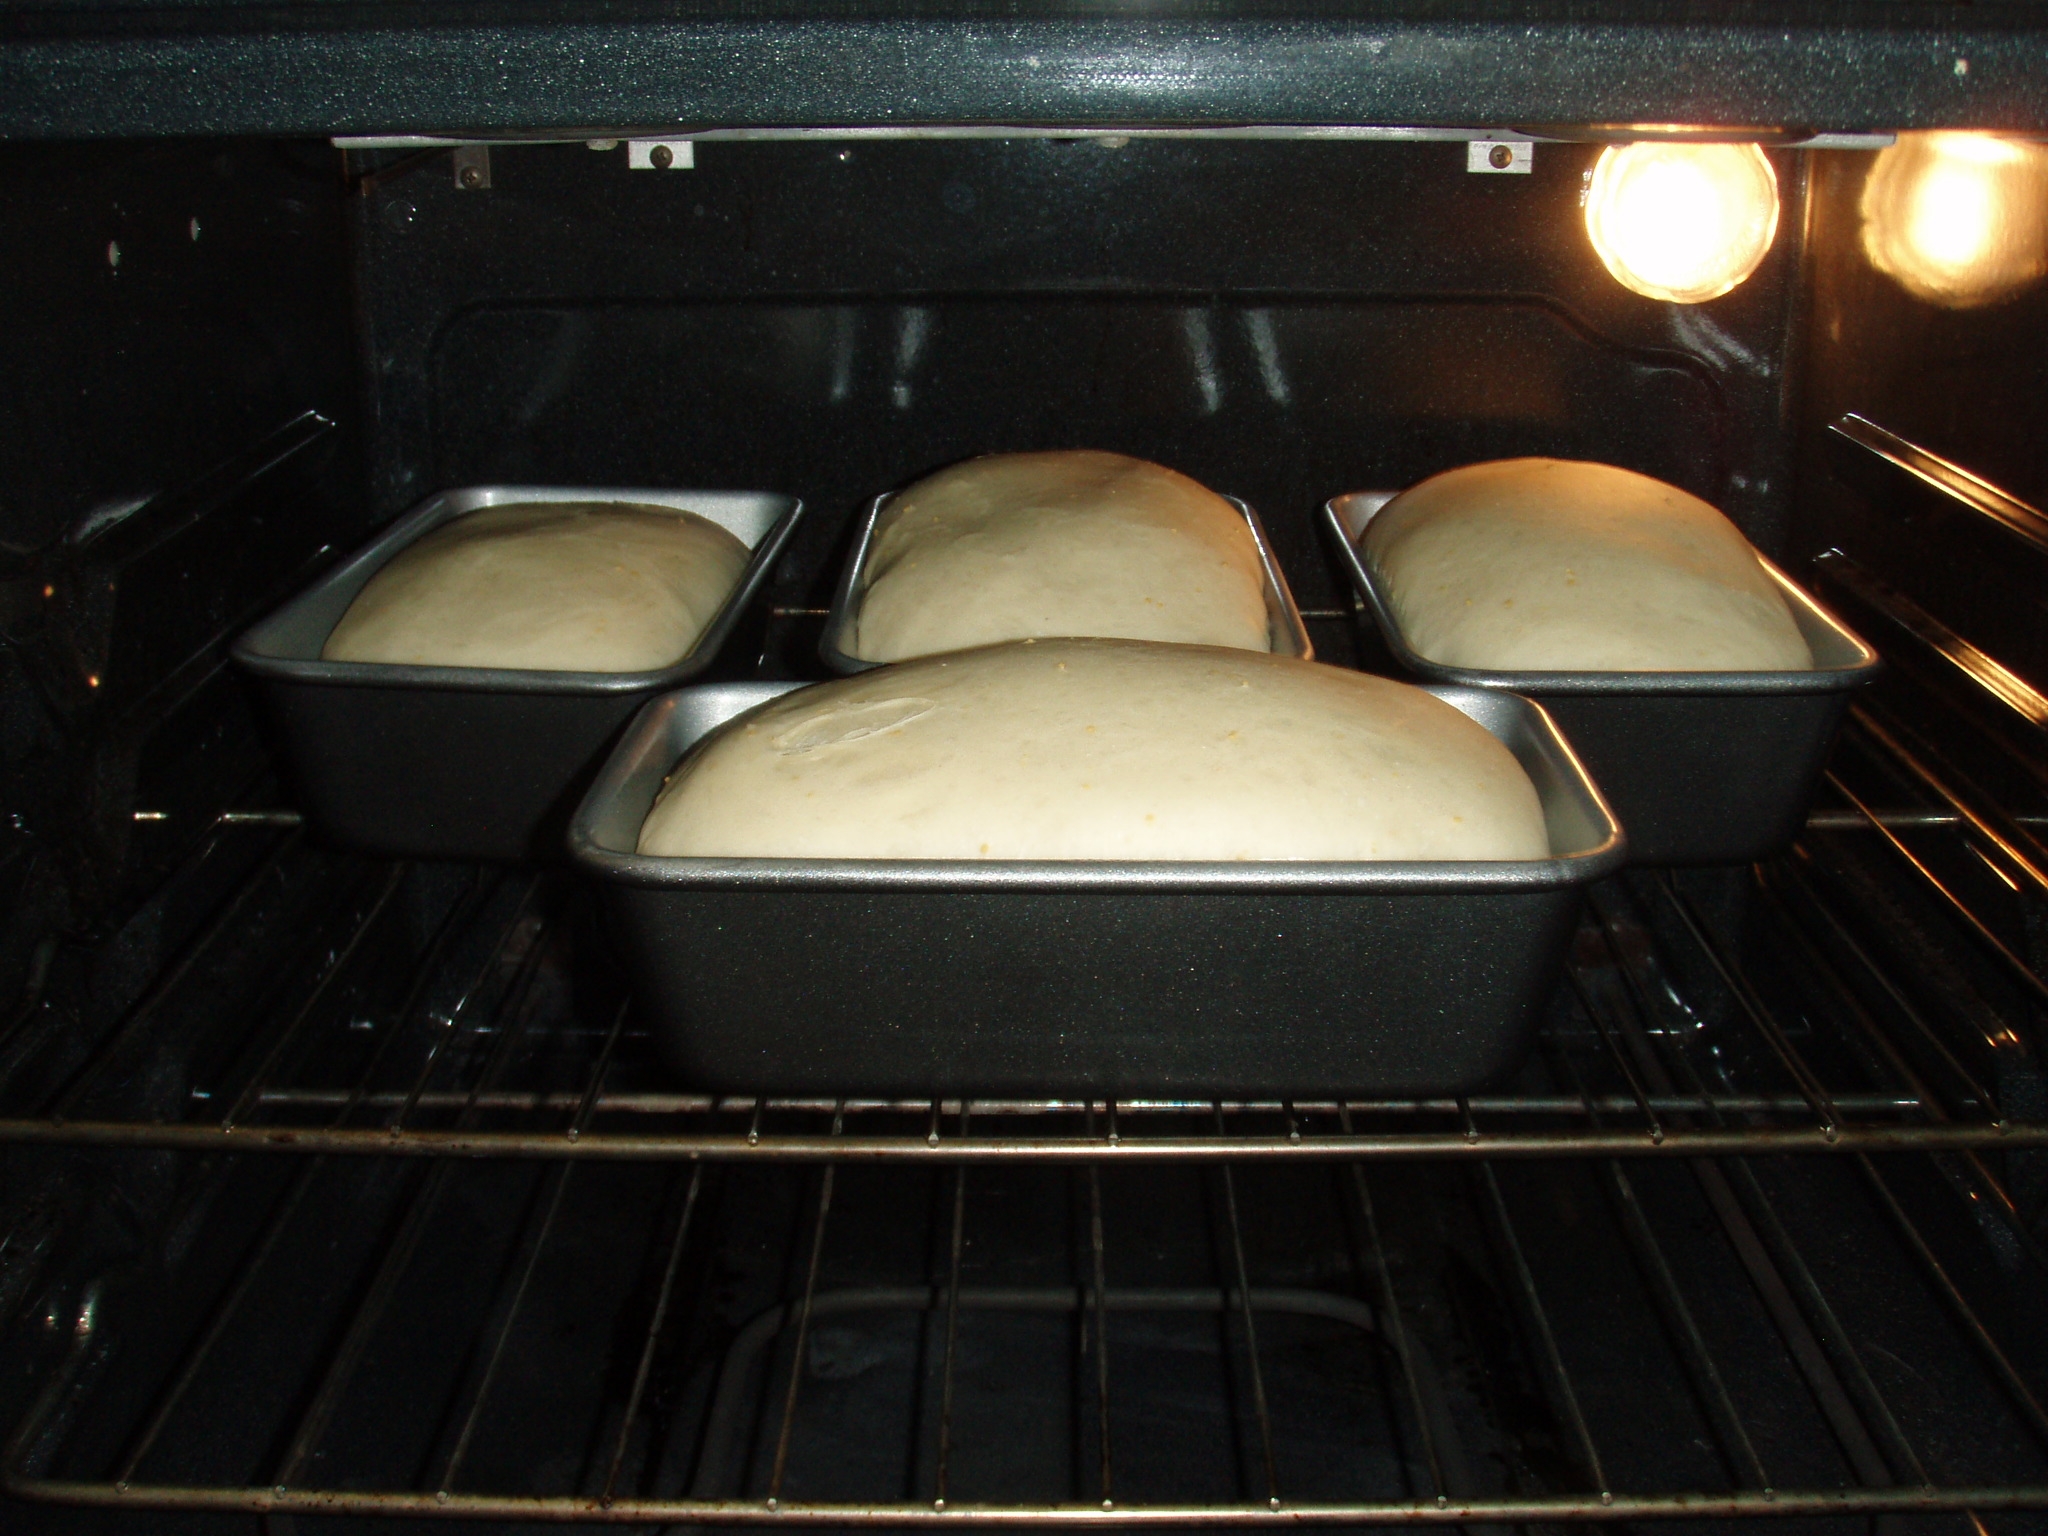 Хлеб в духовке с маслом рецепт